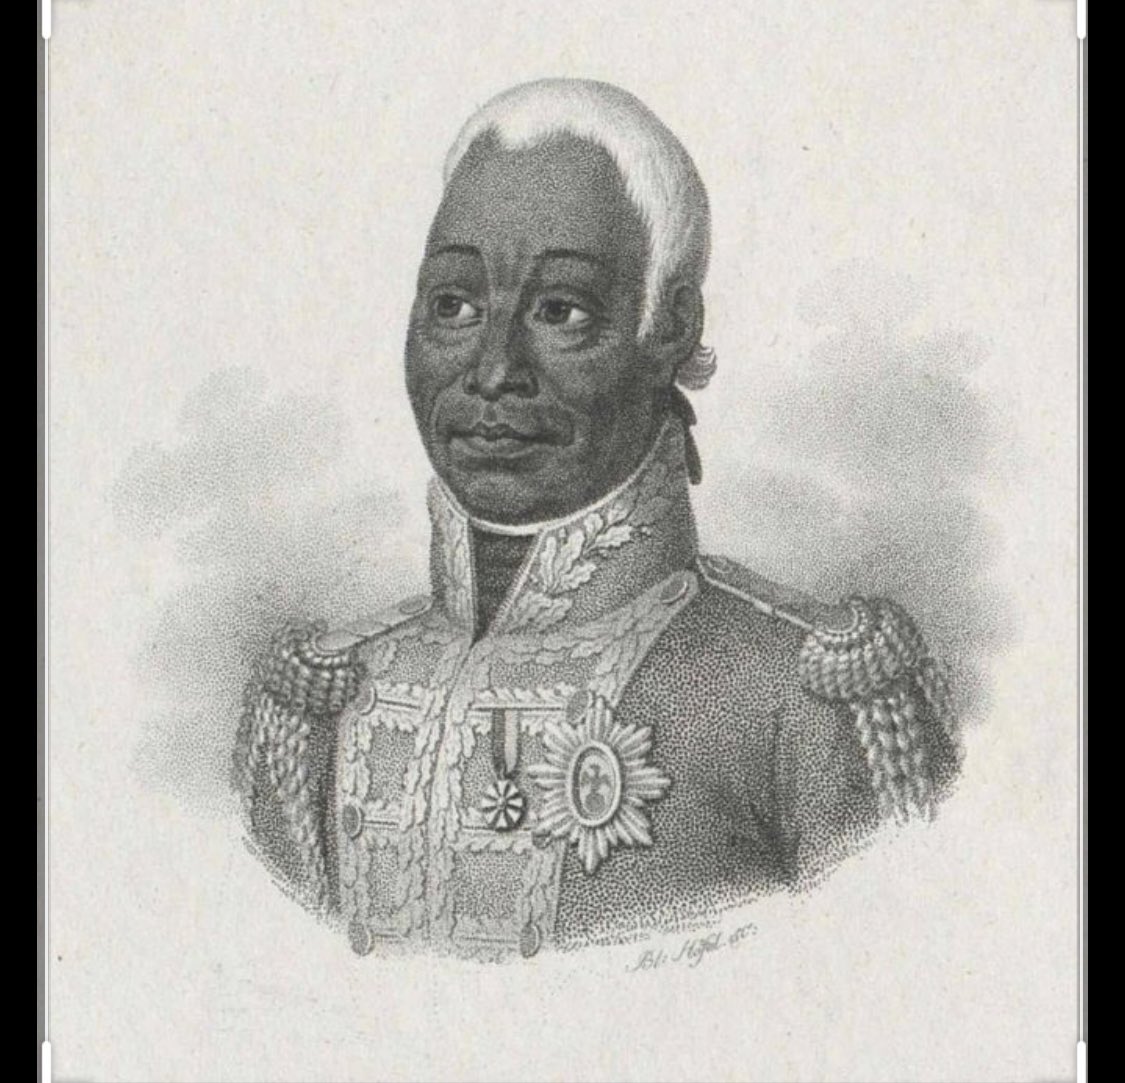 Nous sommes en revanche attristé de la non-représentation du Roi Henri Christophe dans le monde (hormis aux États-Unis à Savannah) le fondateur de la civilisation haïtienne était auprès de Dessalines et de Petion lors du combat pour l’indépendance.